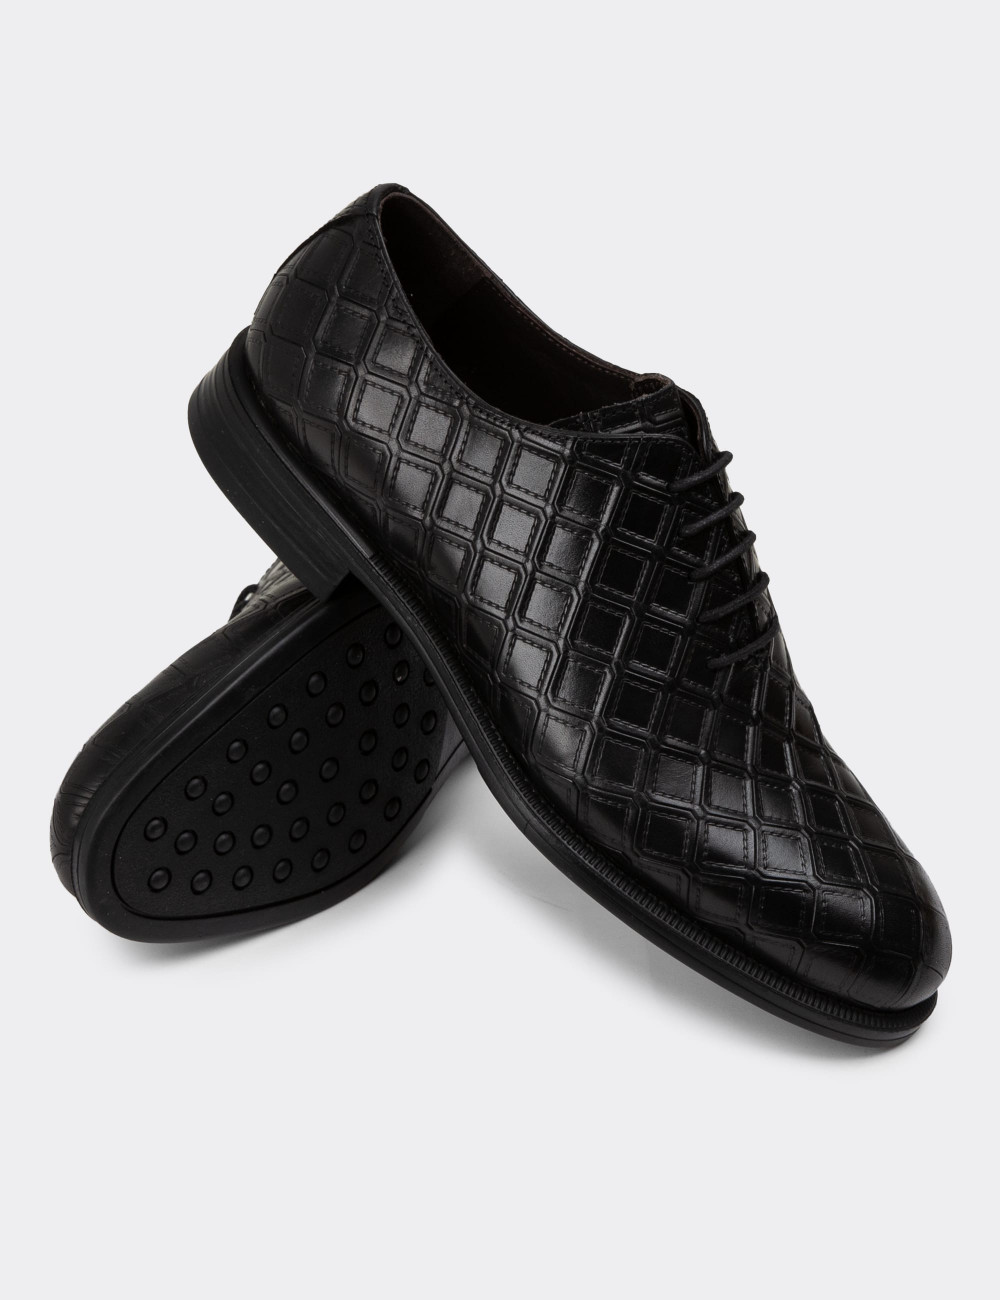 Hakiki Deri Siyah Özel Üretim Erkek Klasik Ayakkabı - 01830MSYHC03